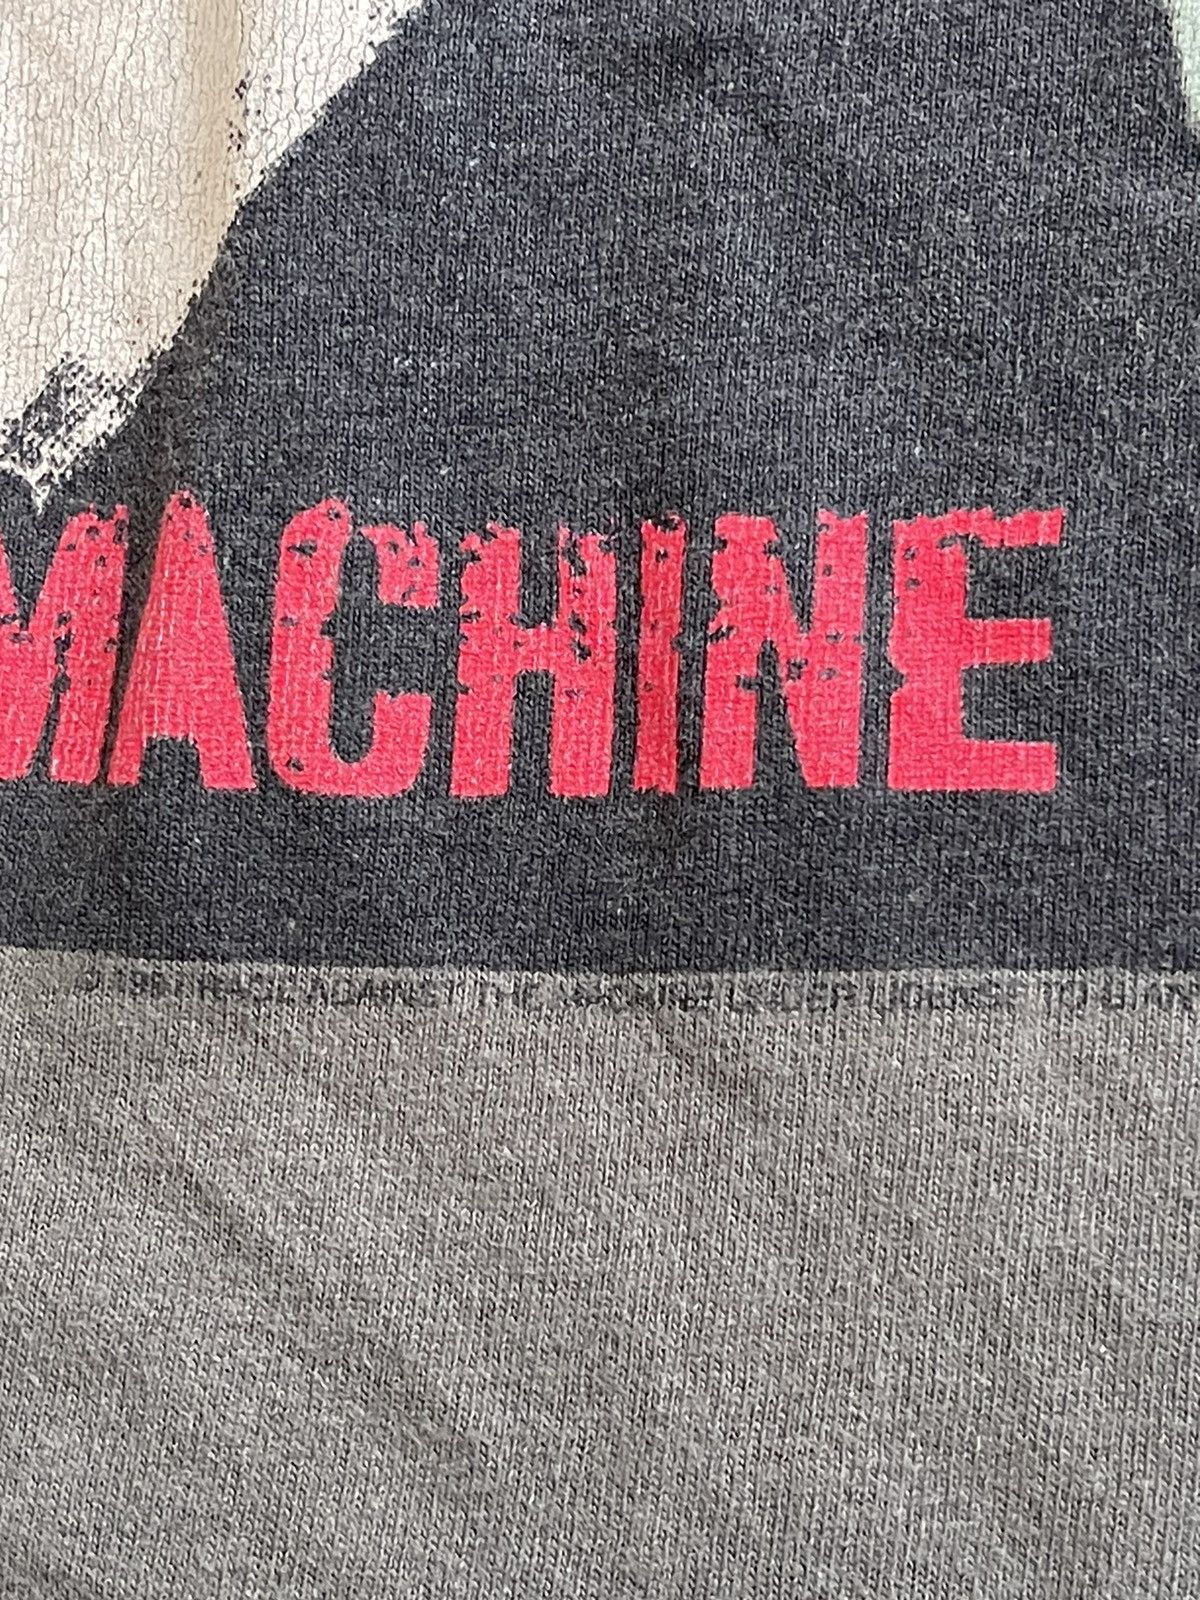 Vintage Rage Against The Machine 1997 Emiliano Zapata Rare - 5